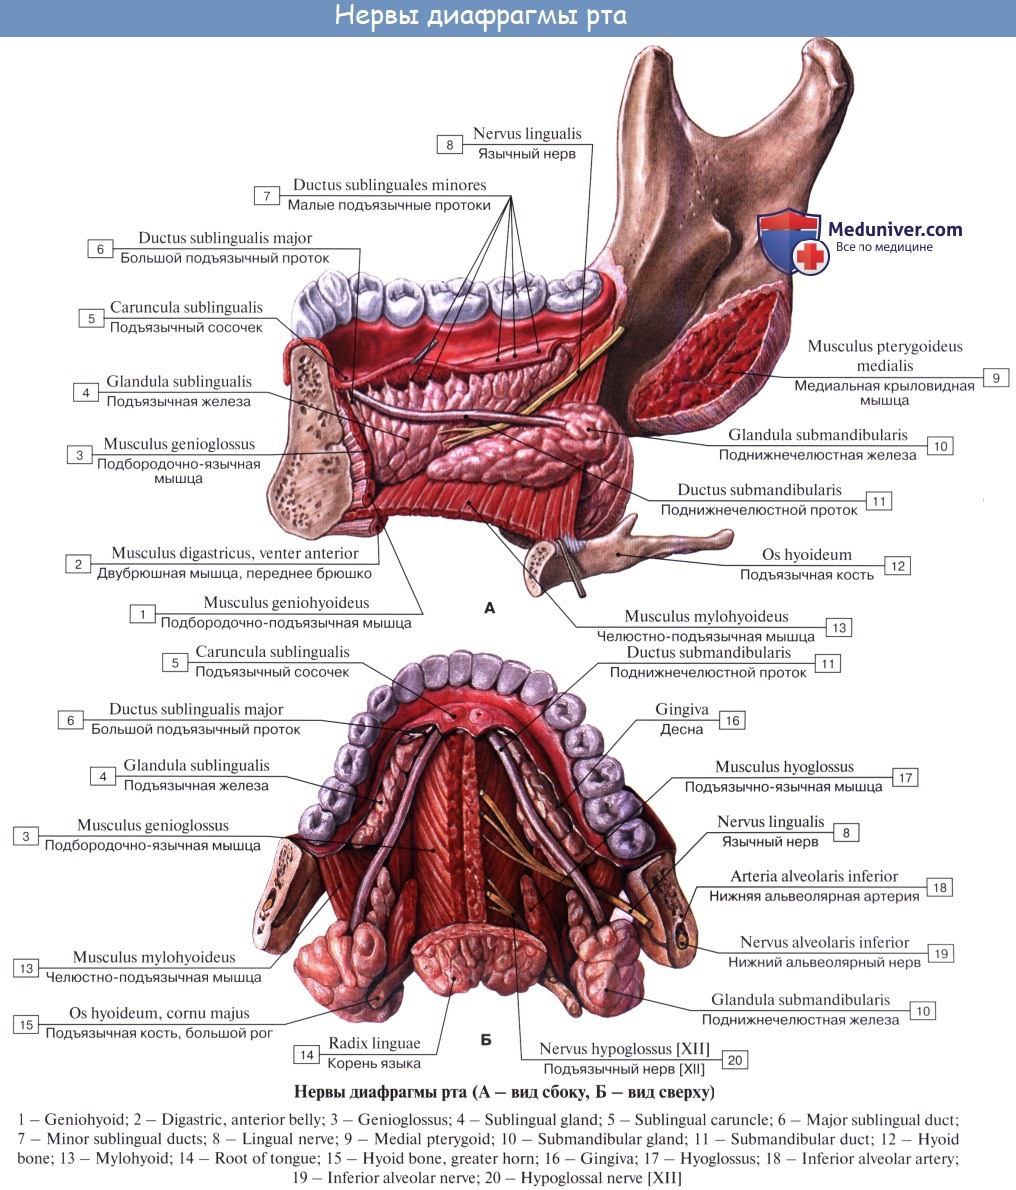 Подъязычная складка. Строение подъязычной железы анатомия. Большой подъязычный проток (Ductus sublingualis Major). Подъязычное пространство человека. Подъязычные складки строение.